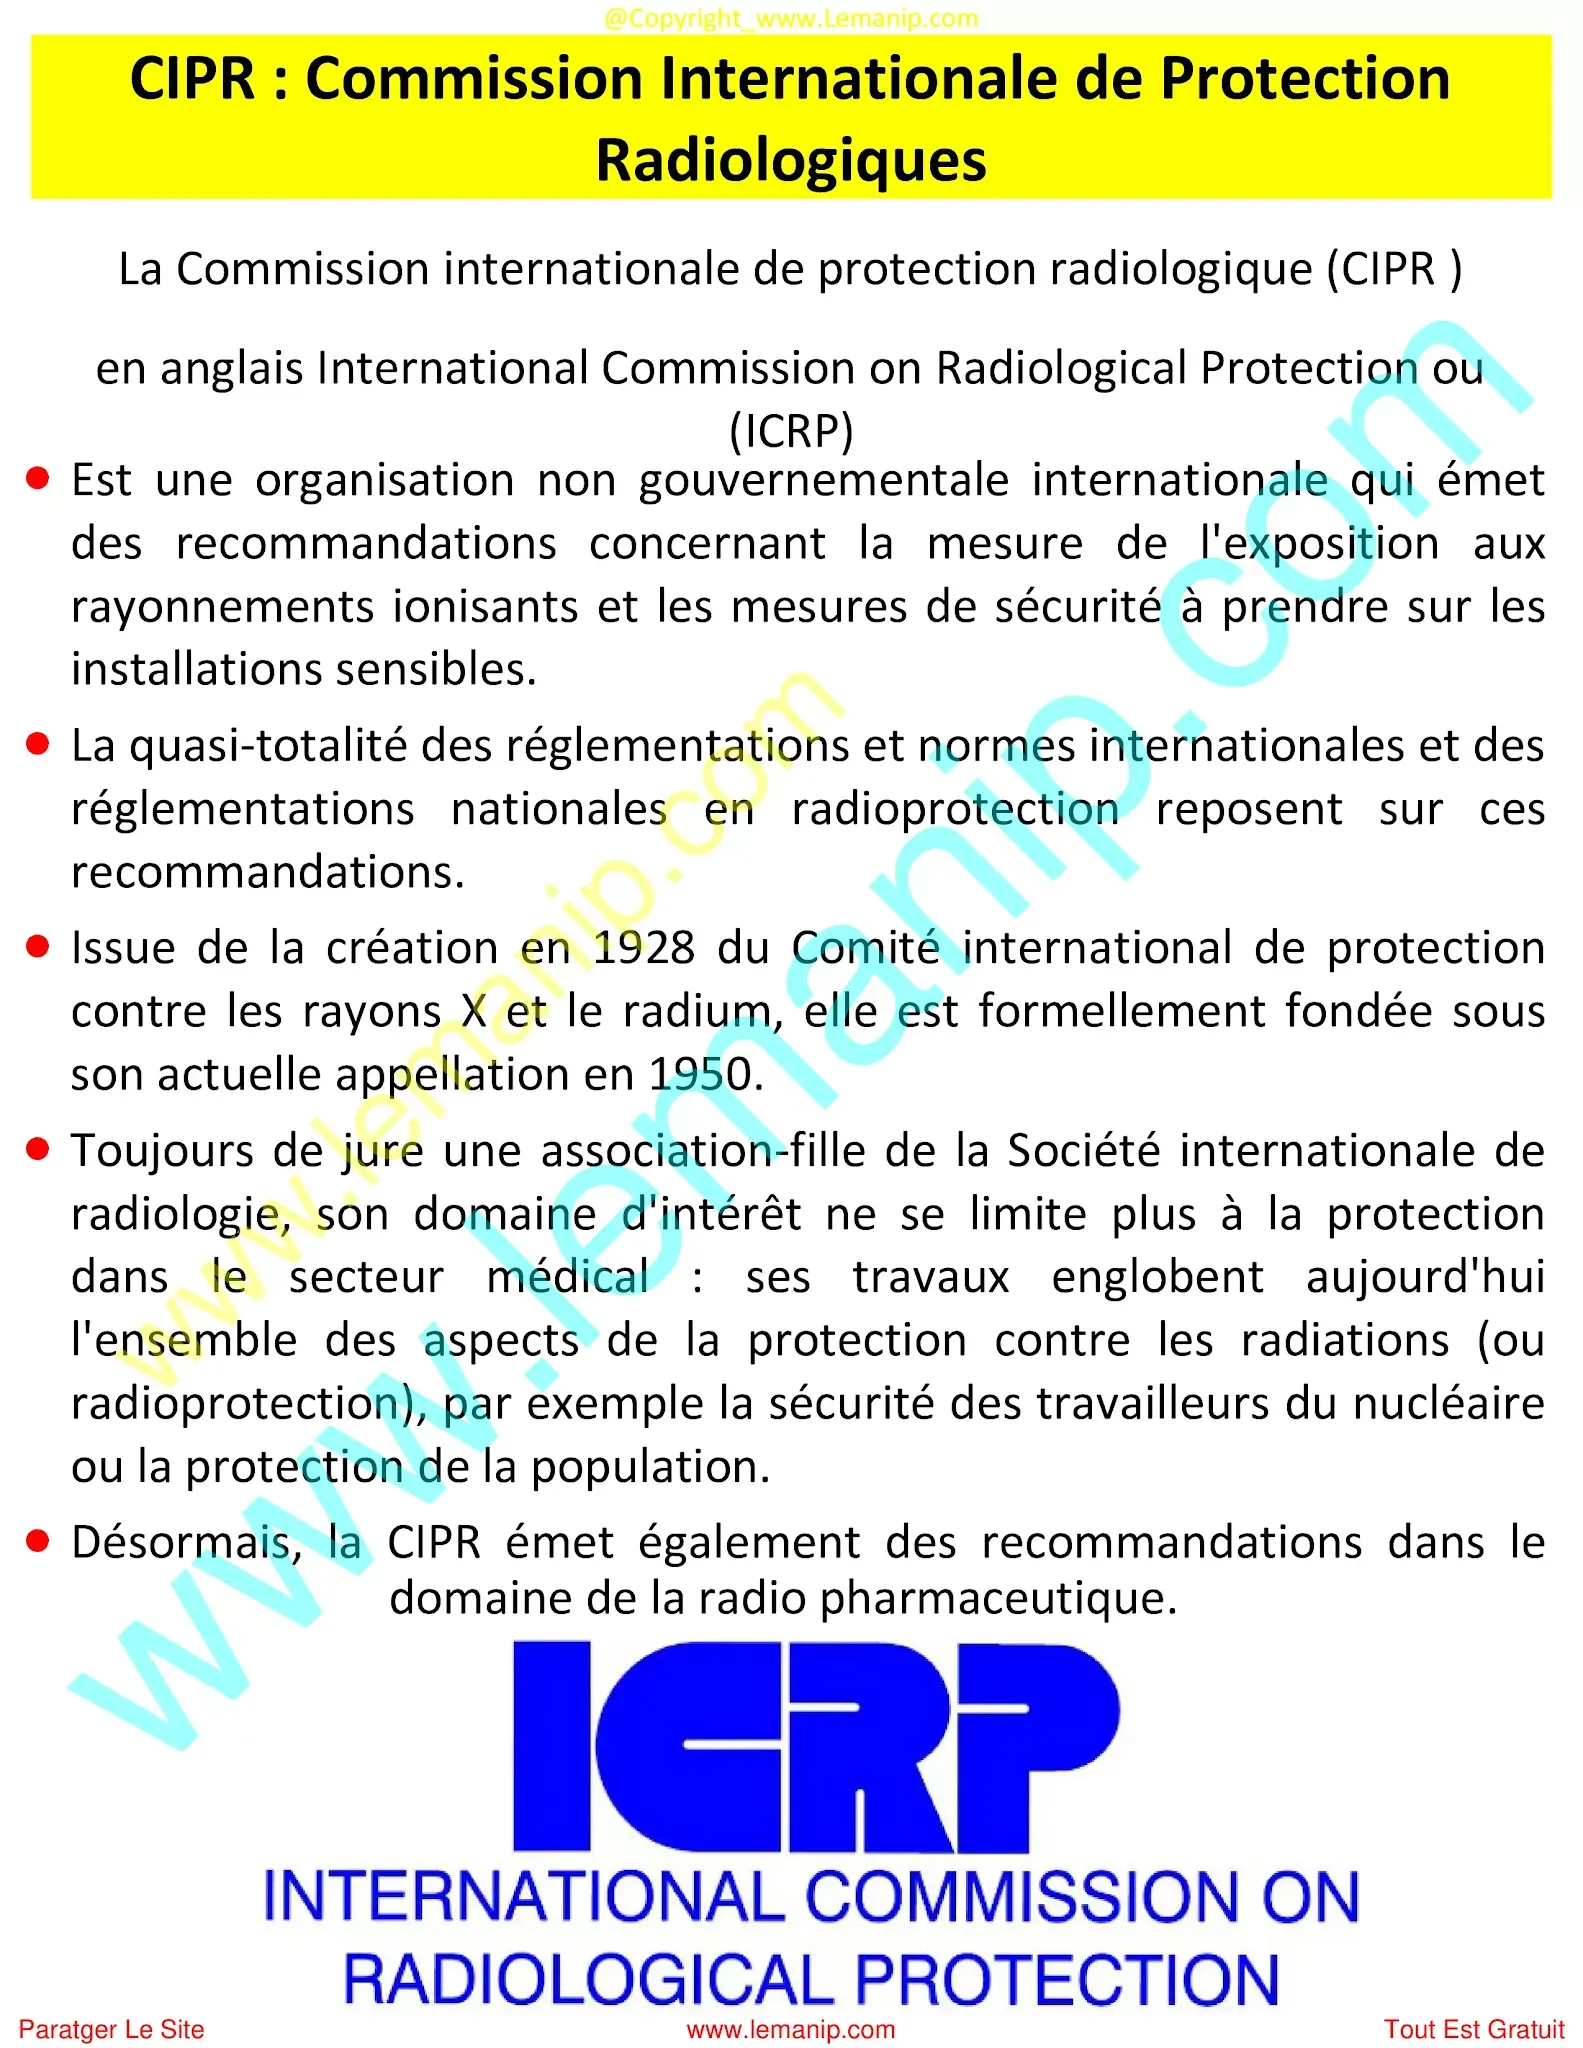 CIPR : Commission Internationale de Protection Radiologiques